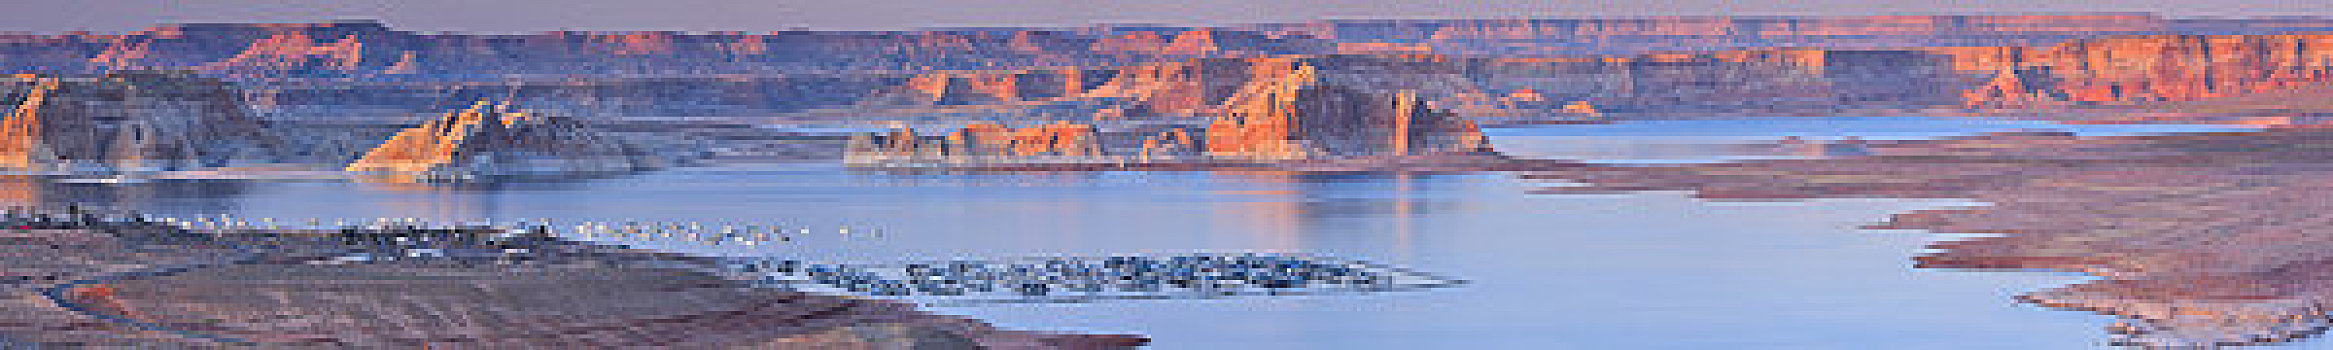 岩石构造,荒芜,湖岸,鲍威尔湖,幽谷国家娱乐区,页岩,亚利桑那,美国